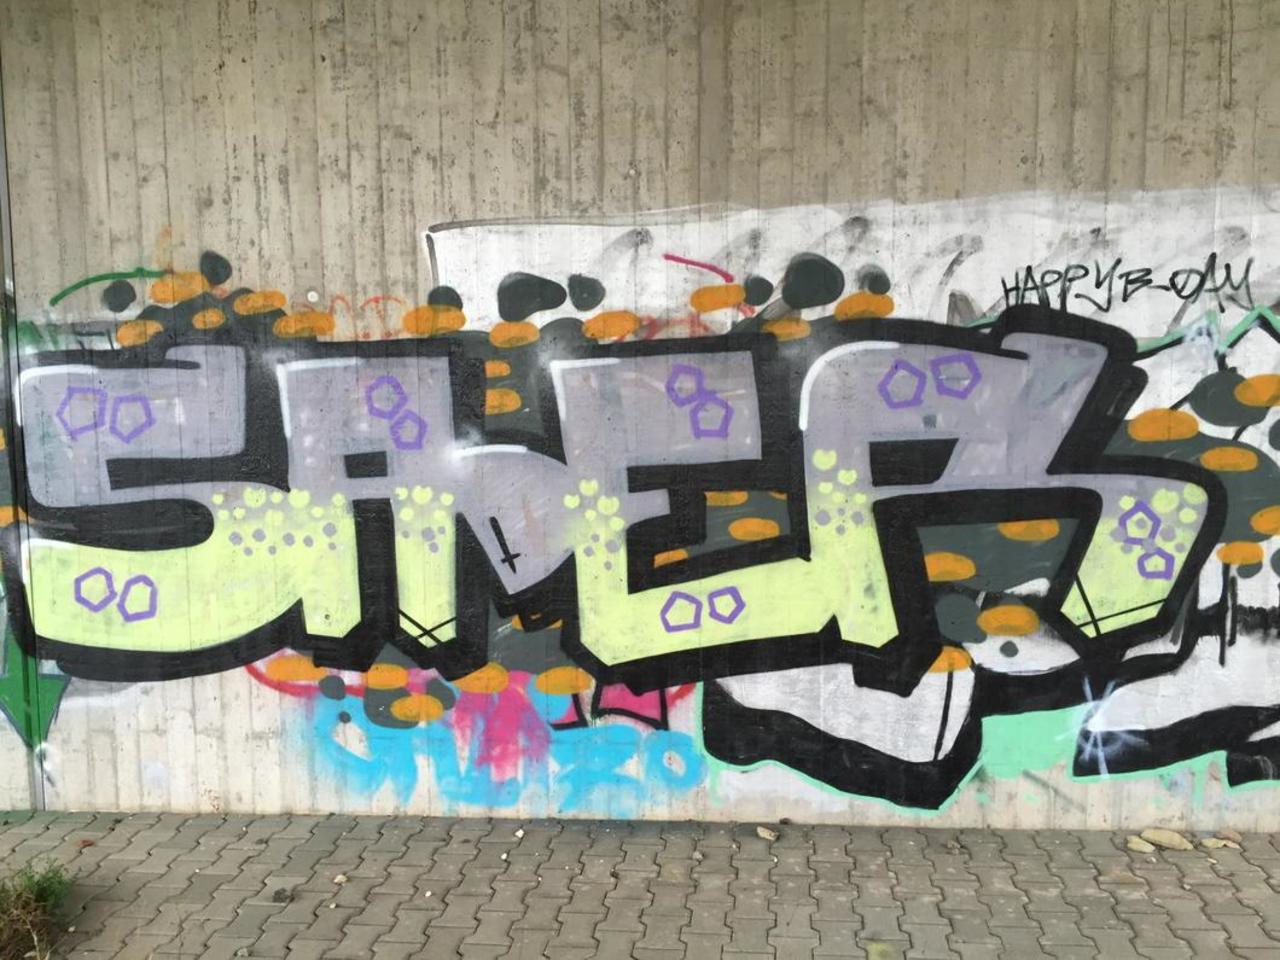 ...in Taunusstein // Sader //#streetart #graffiti http://t.co/4cSi0wpUet